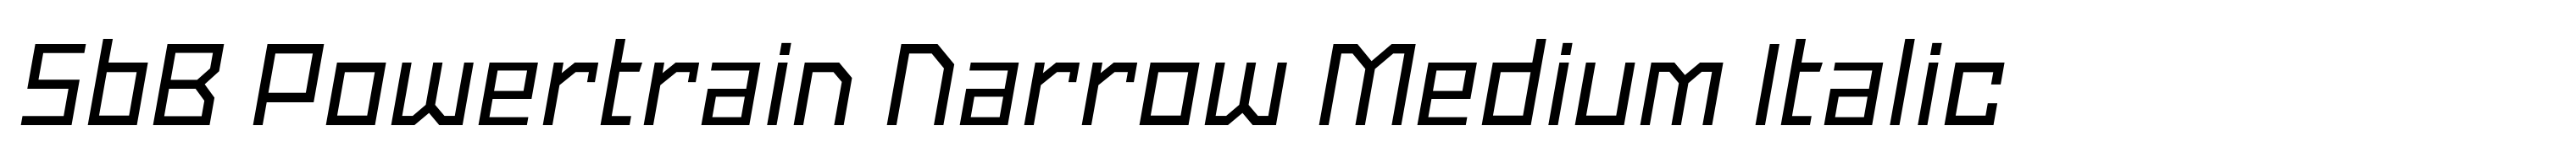 SbB Powertrain Narrow Medium Italic